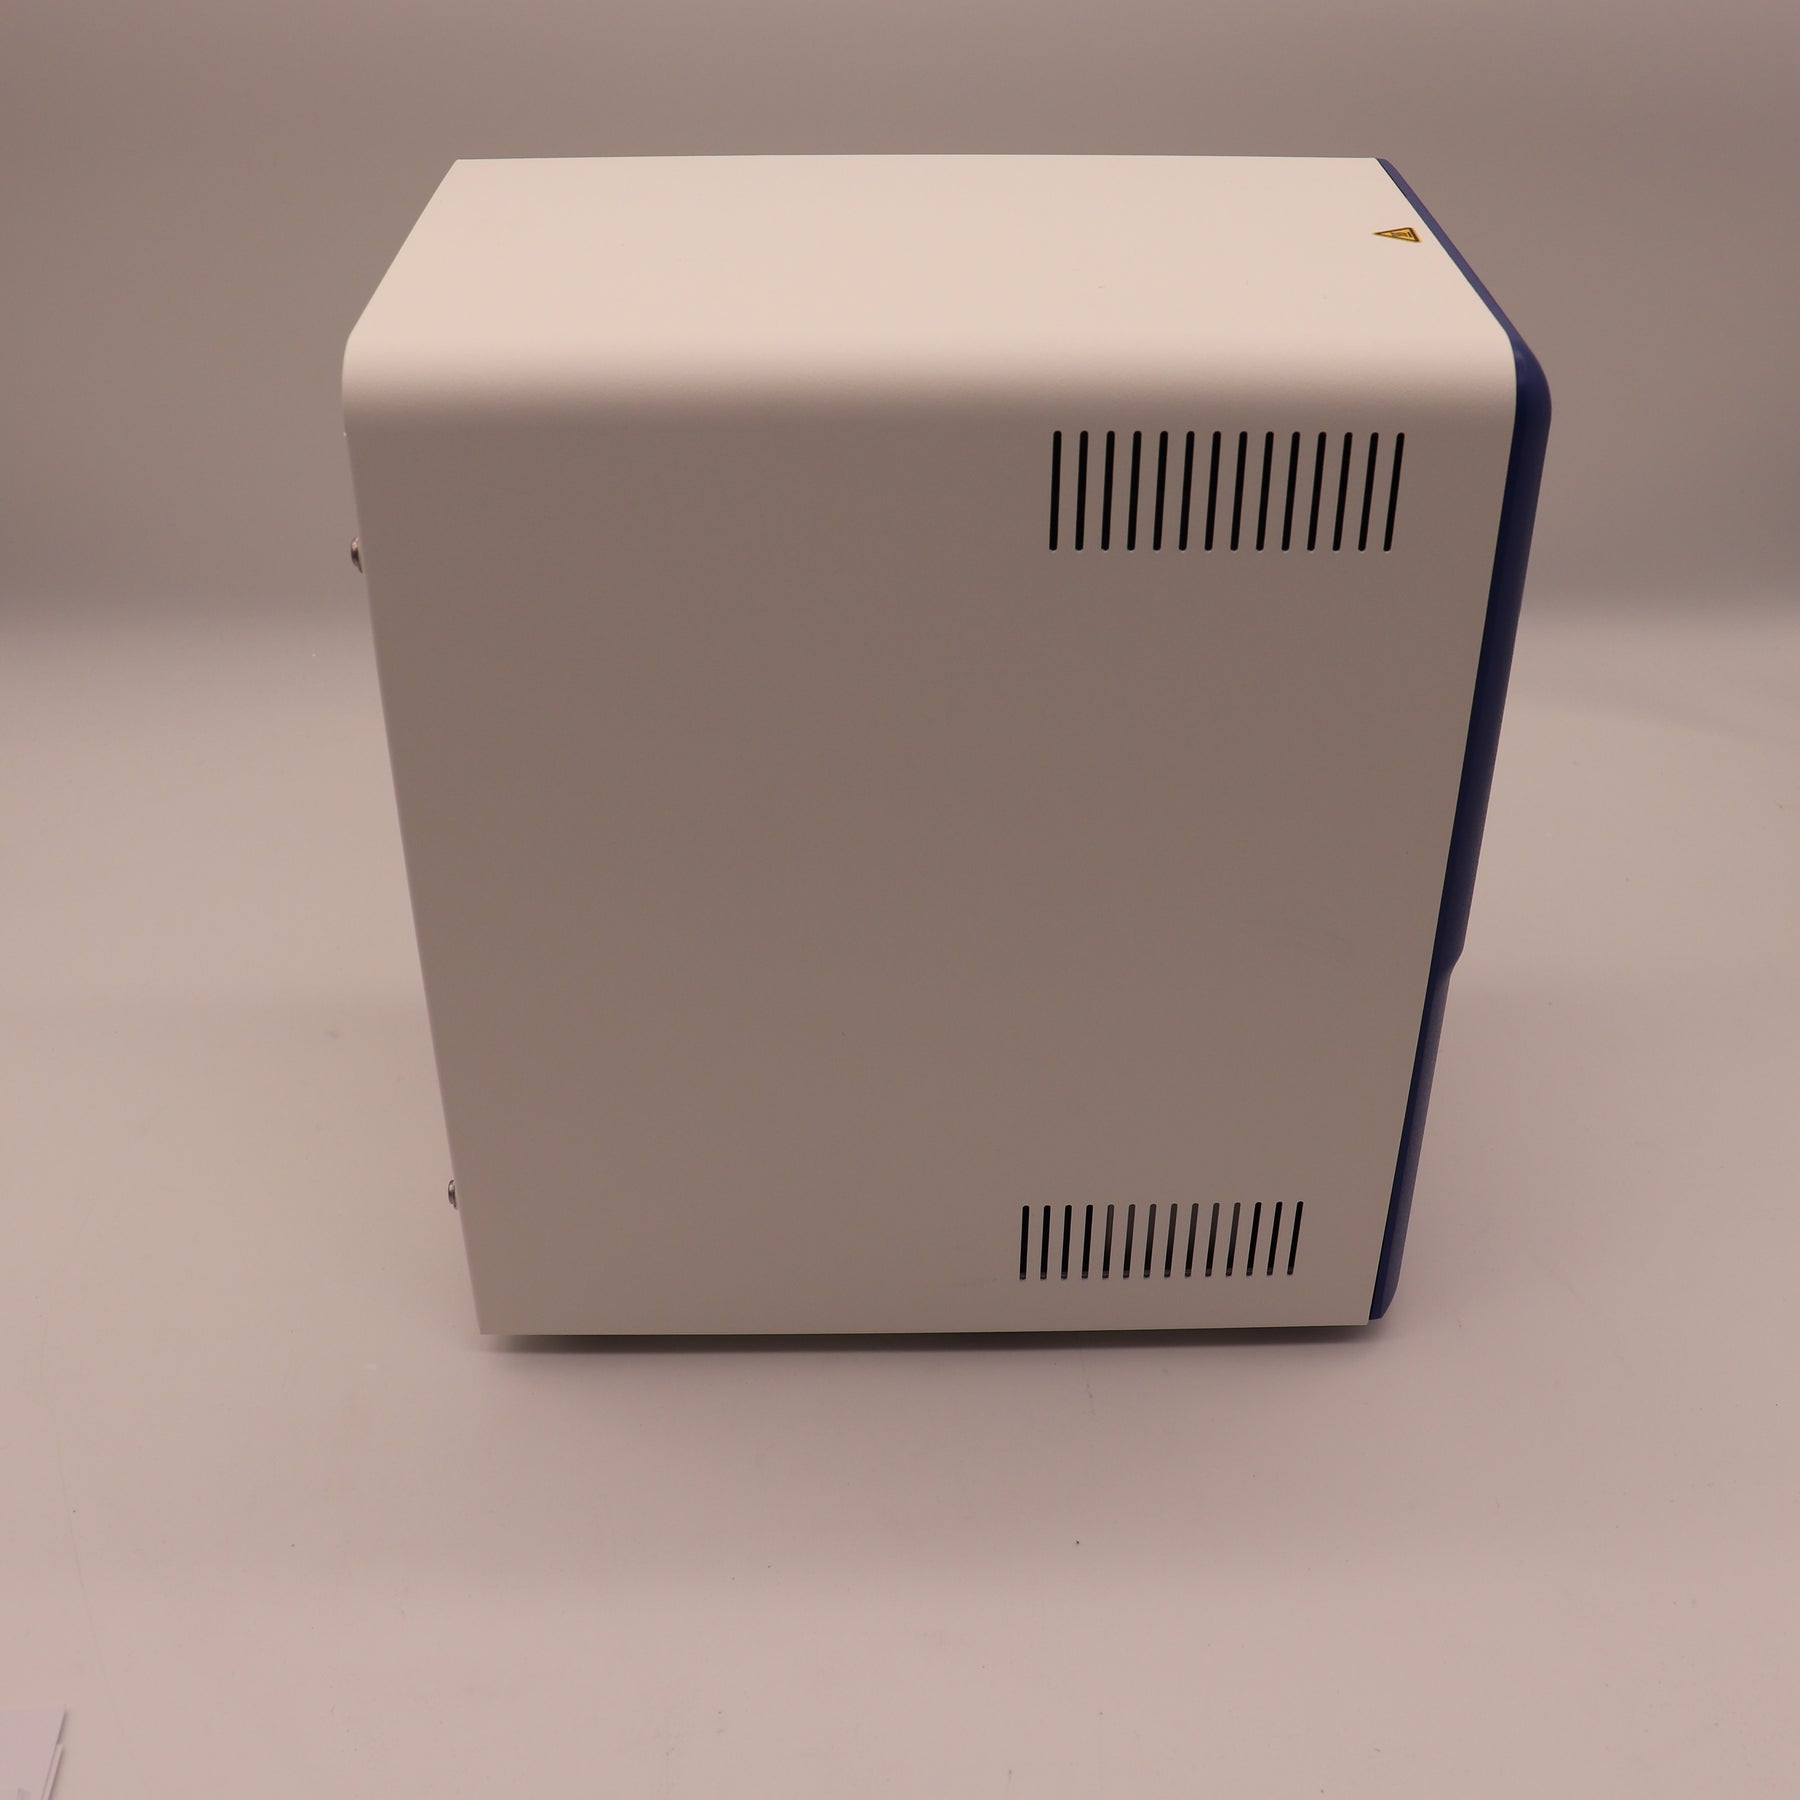 Brooks Semi-Automatic Sheet Microplate Heat Sealer IntelliXseal SA HT121TS/4B